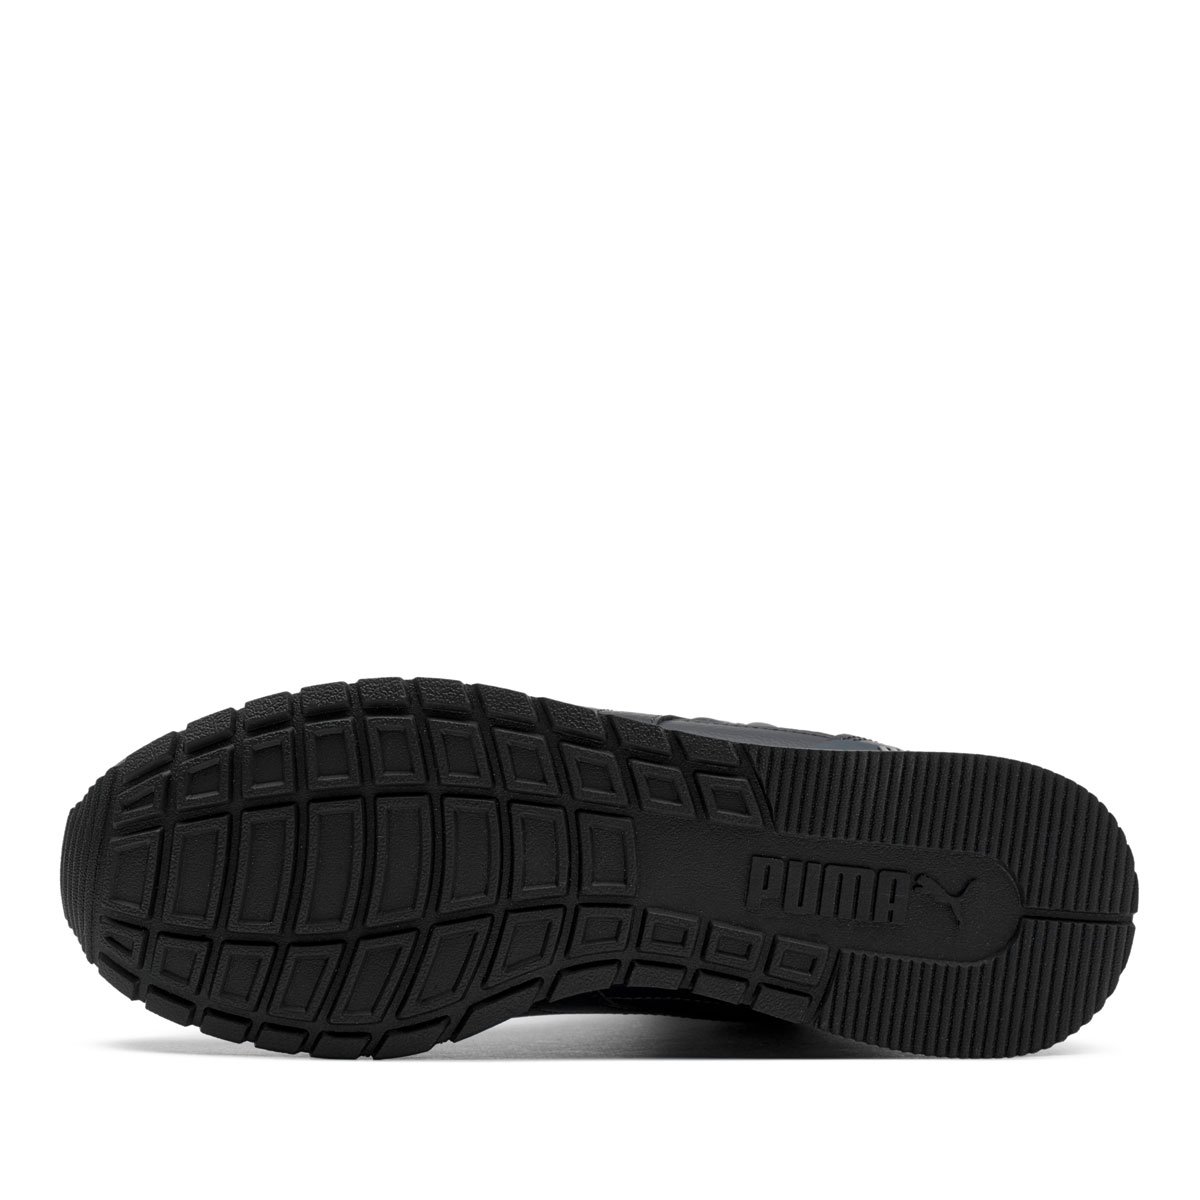 Puma ST Runner V3 Mid Leather Мъжки спортни обувки 387638-04